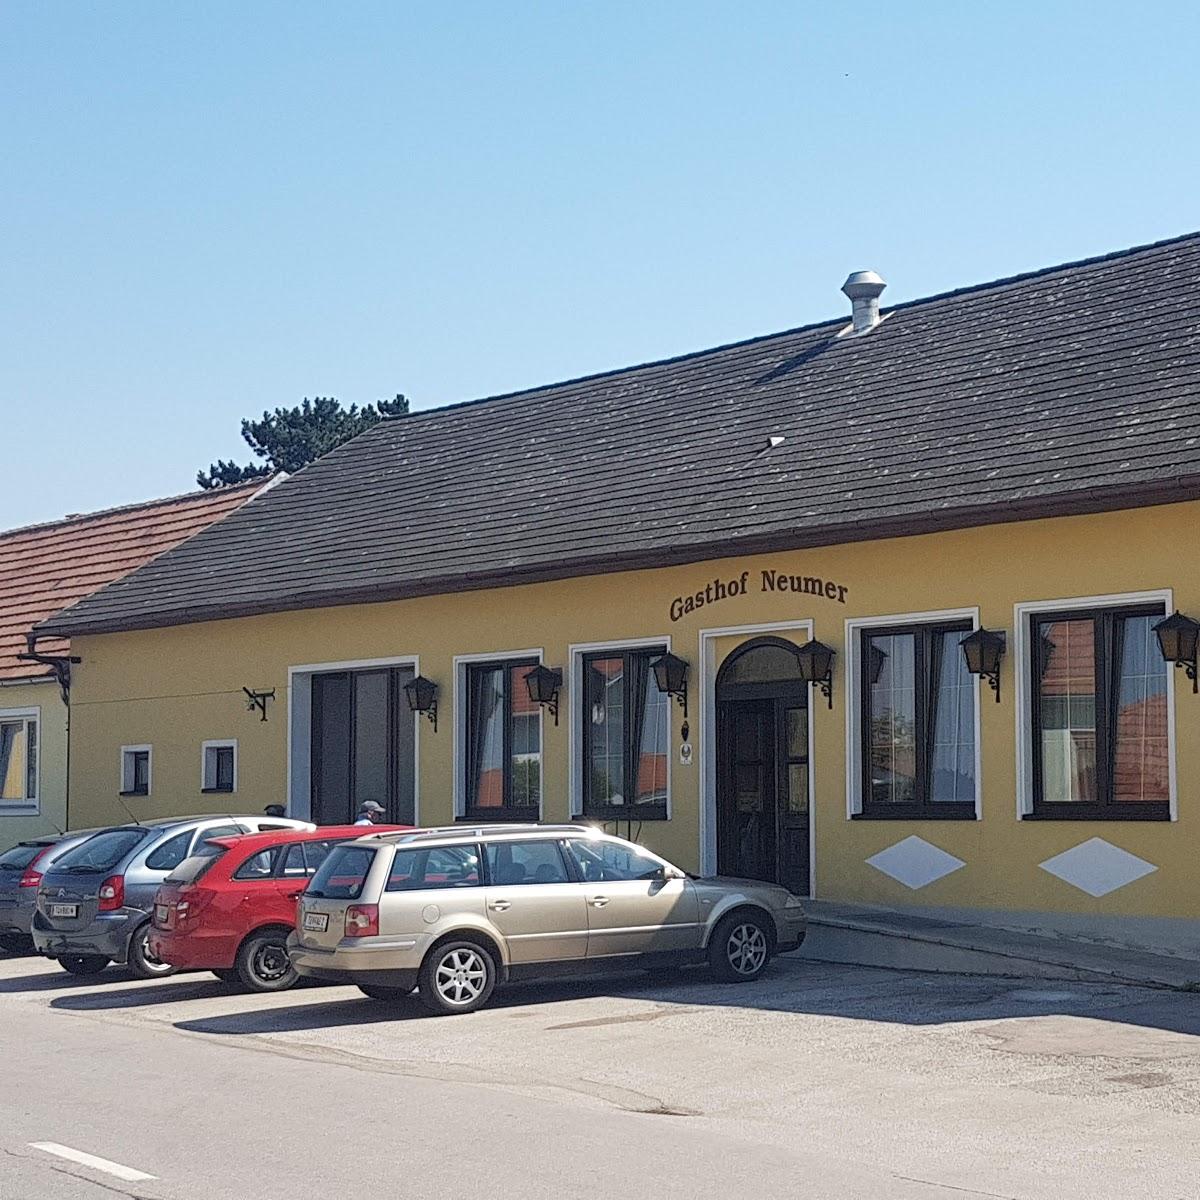 Restaurant "Gasthof Neumer" in Langenrohr